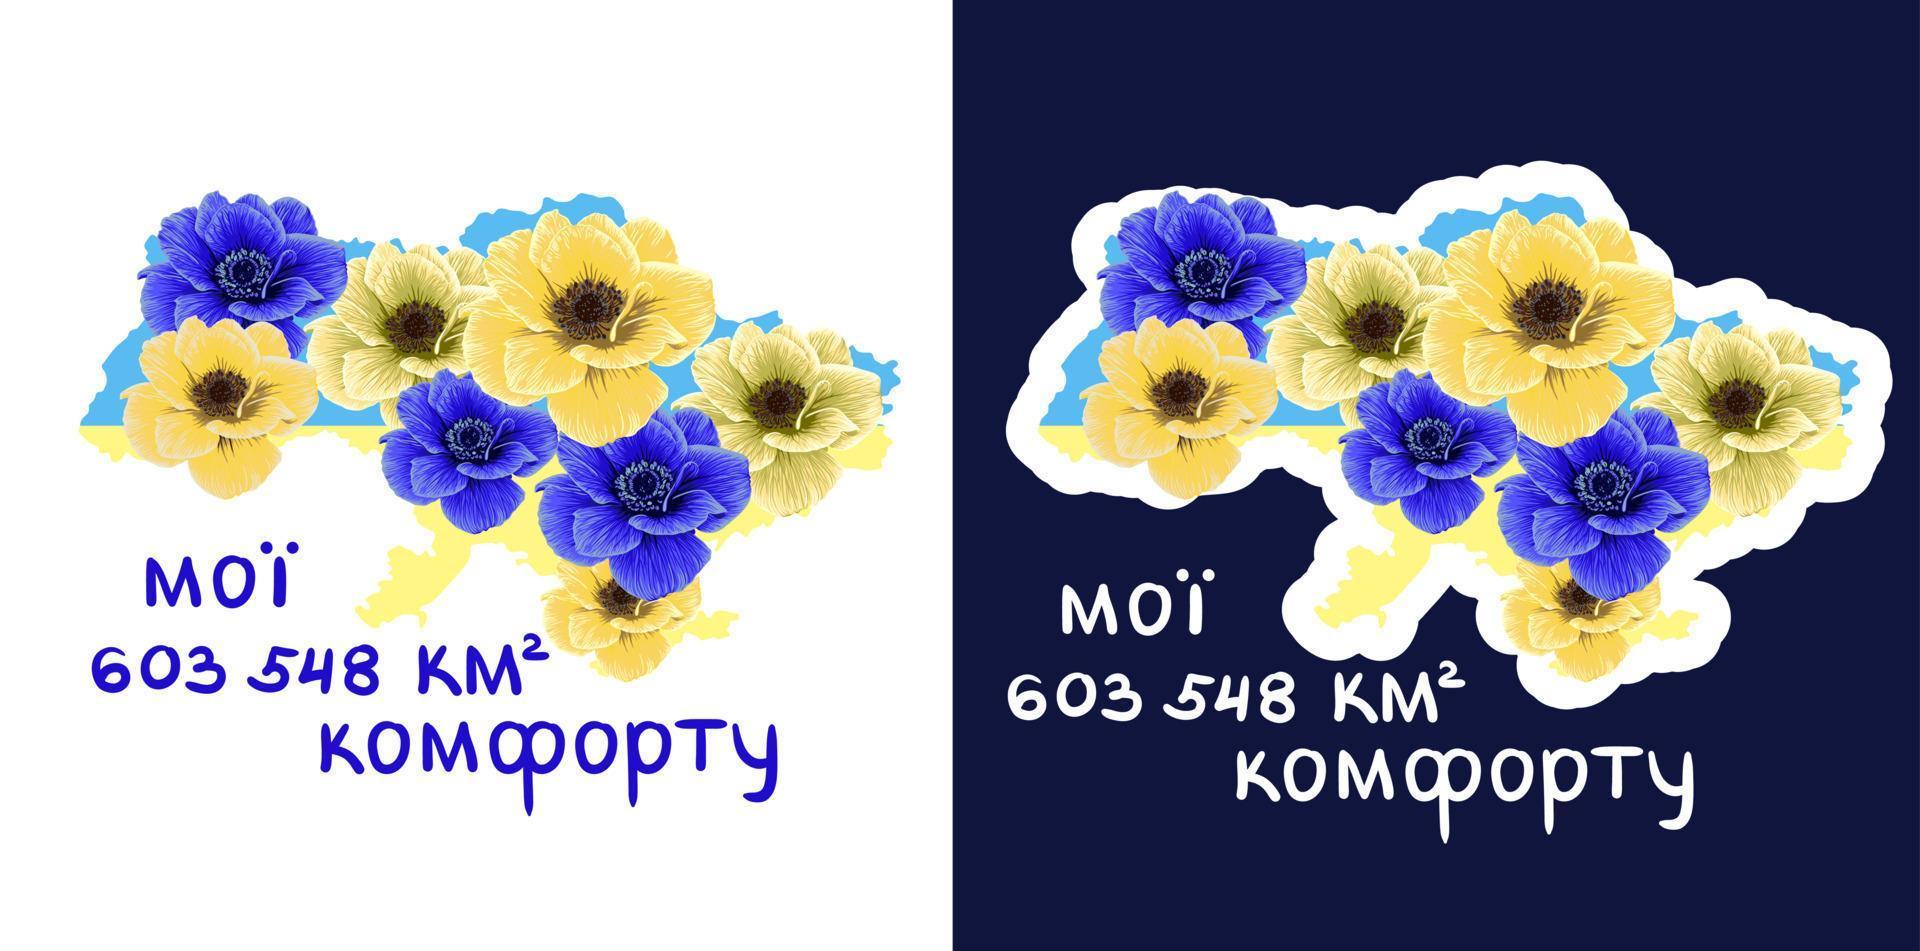 mijn 603.548 plein kilometers van comfort. oekraïens illustratie, de borders van de kaart van Oekraïne in de kleuren van nationaal symbolen gevulde met geel blauw bloemen vector